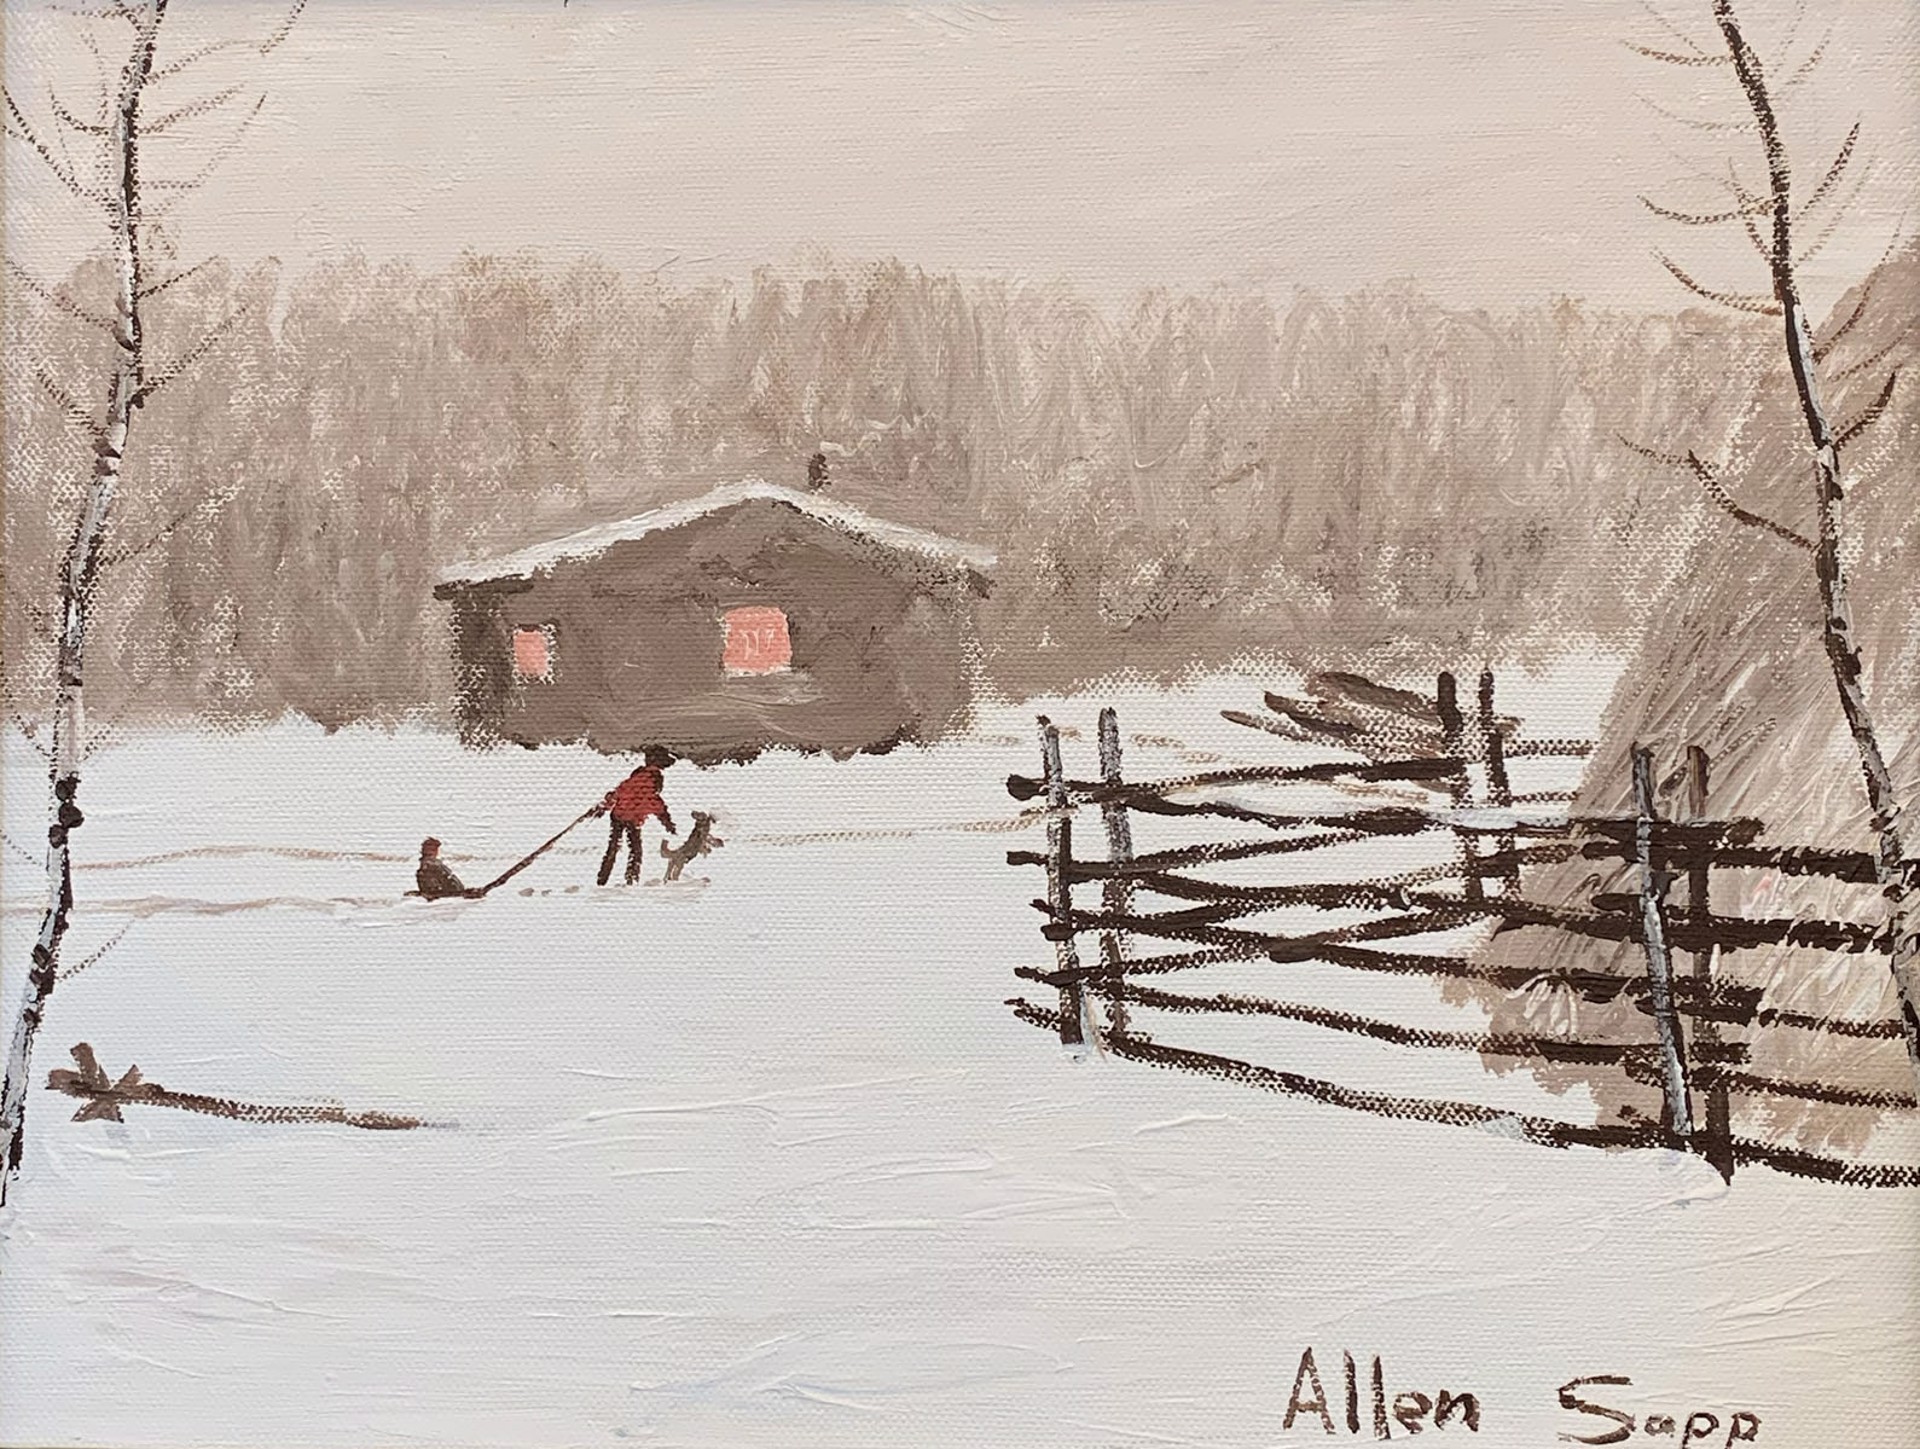 Winter Fun by Allen Sapp (1928-2015)